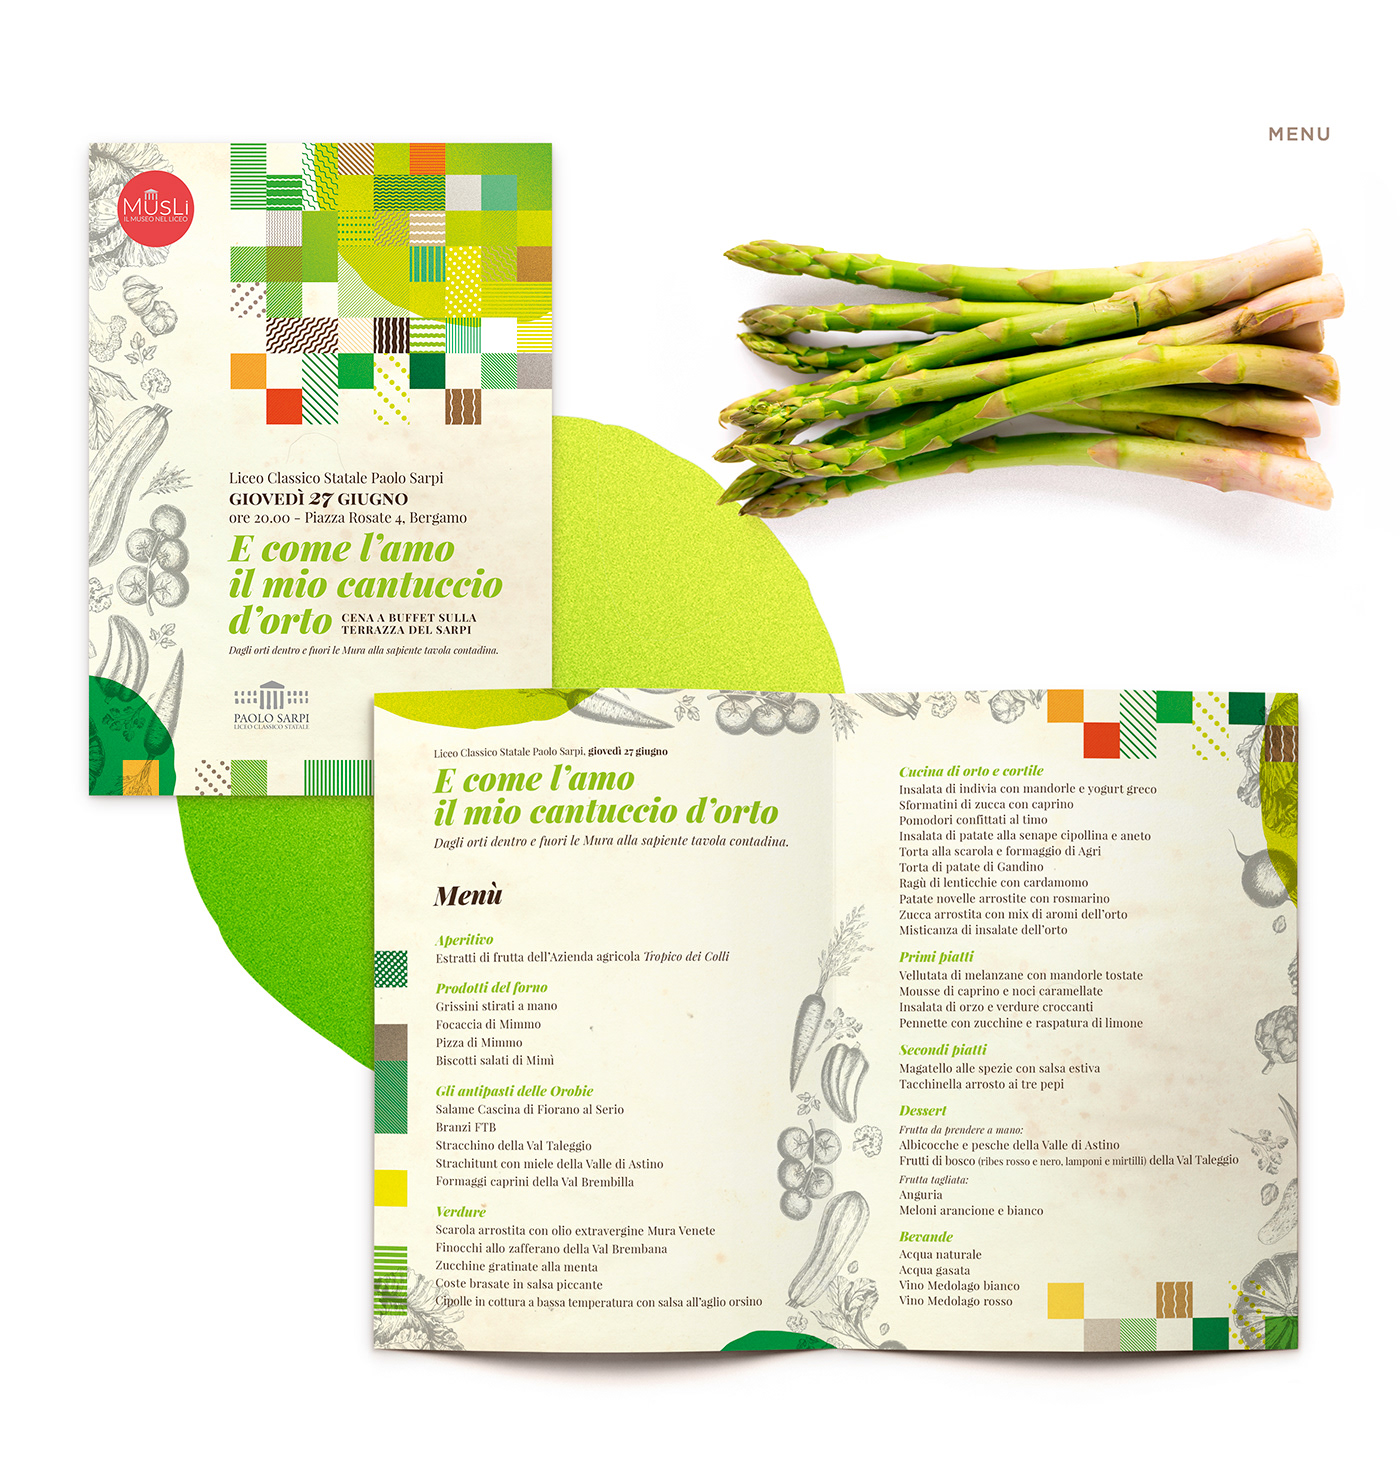 Landscape agriculture vegetables dinner garden flyer menu poster museum bergamo